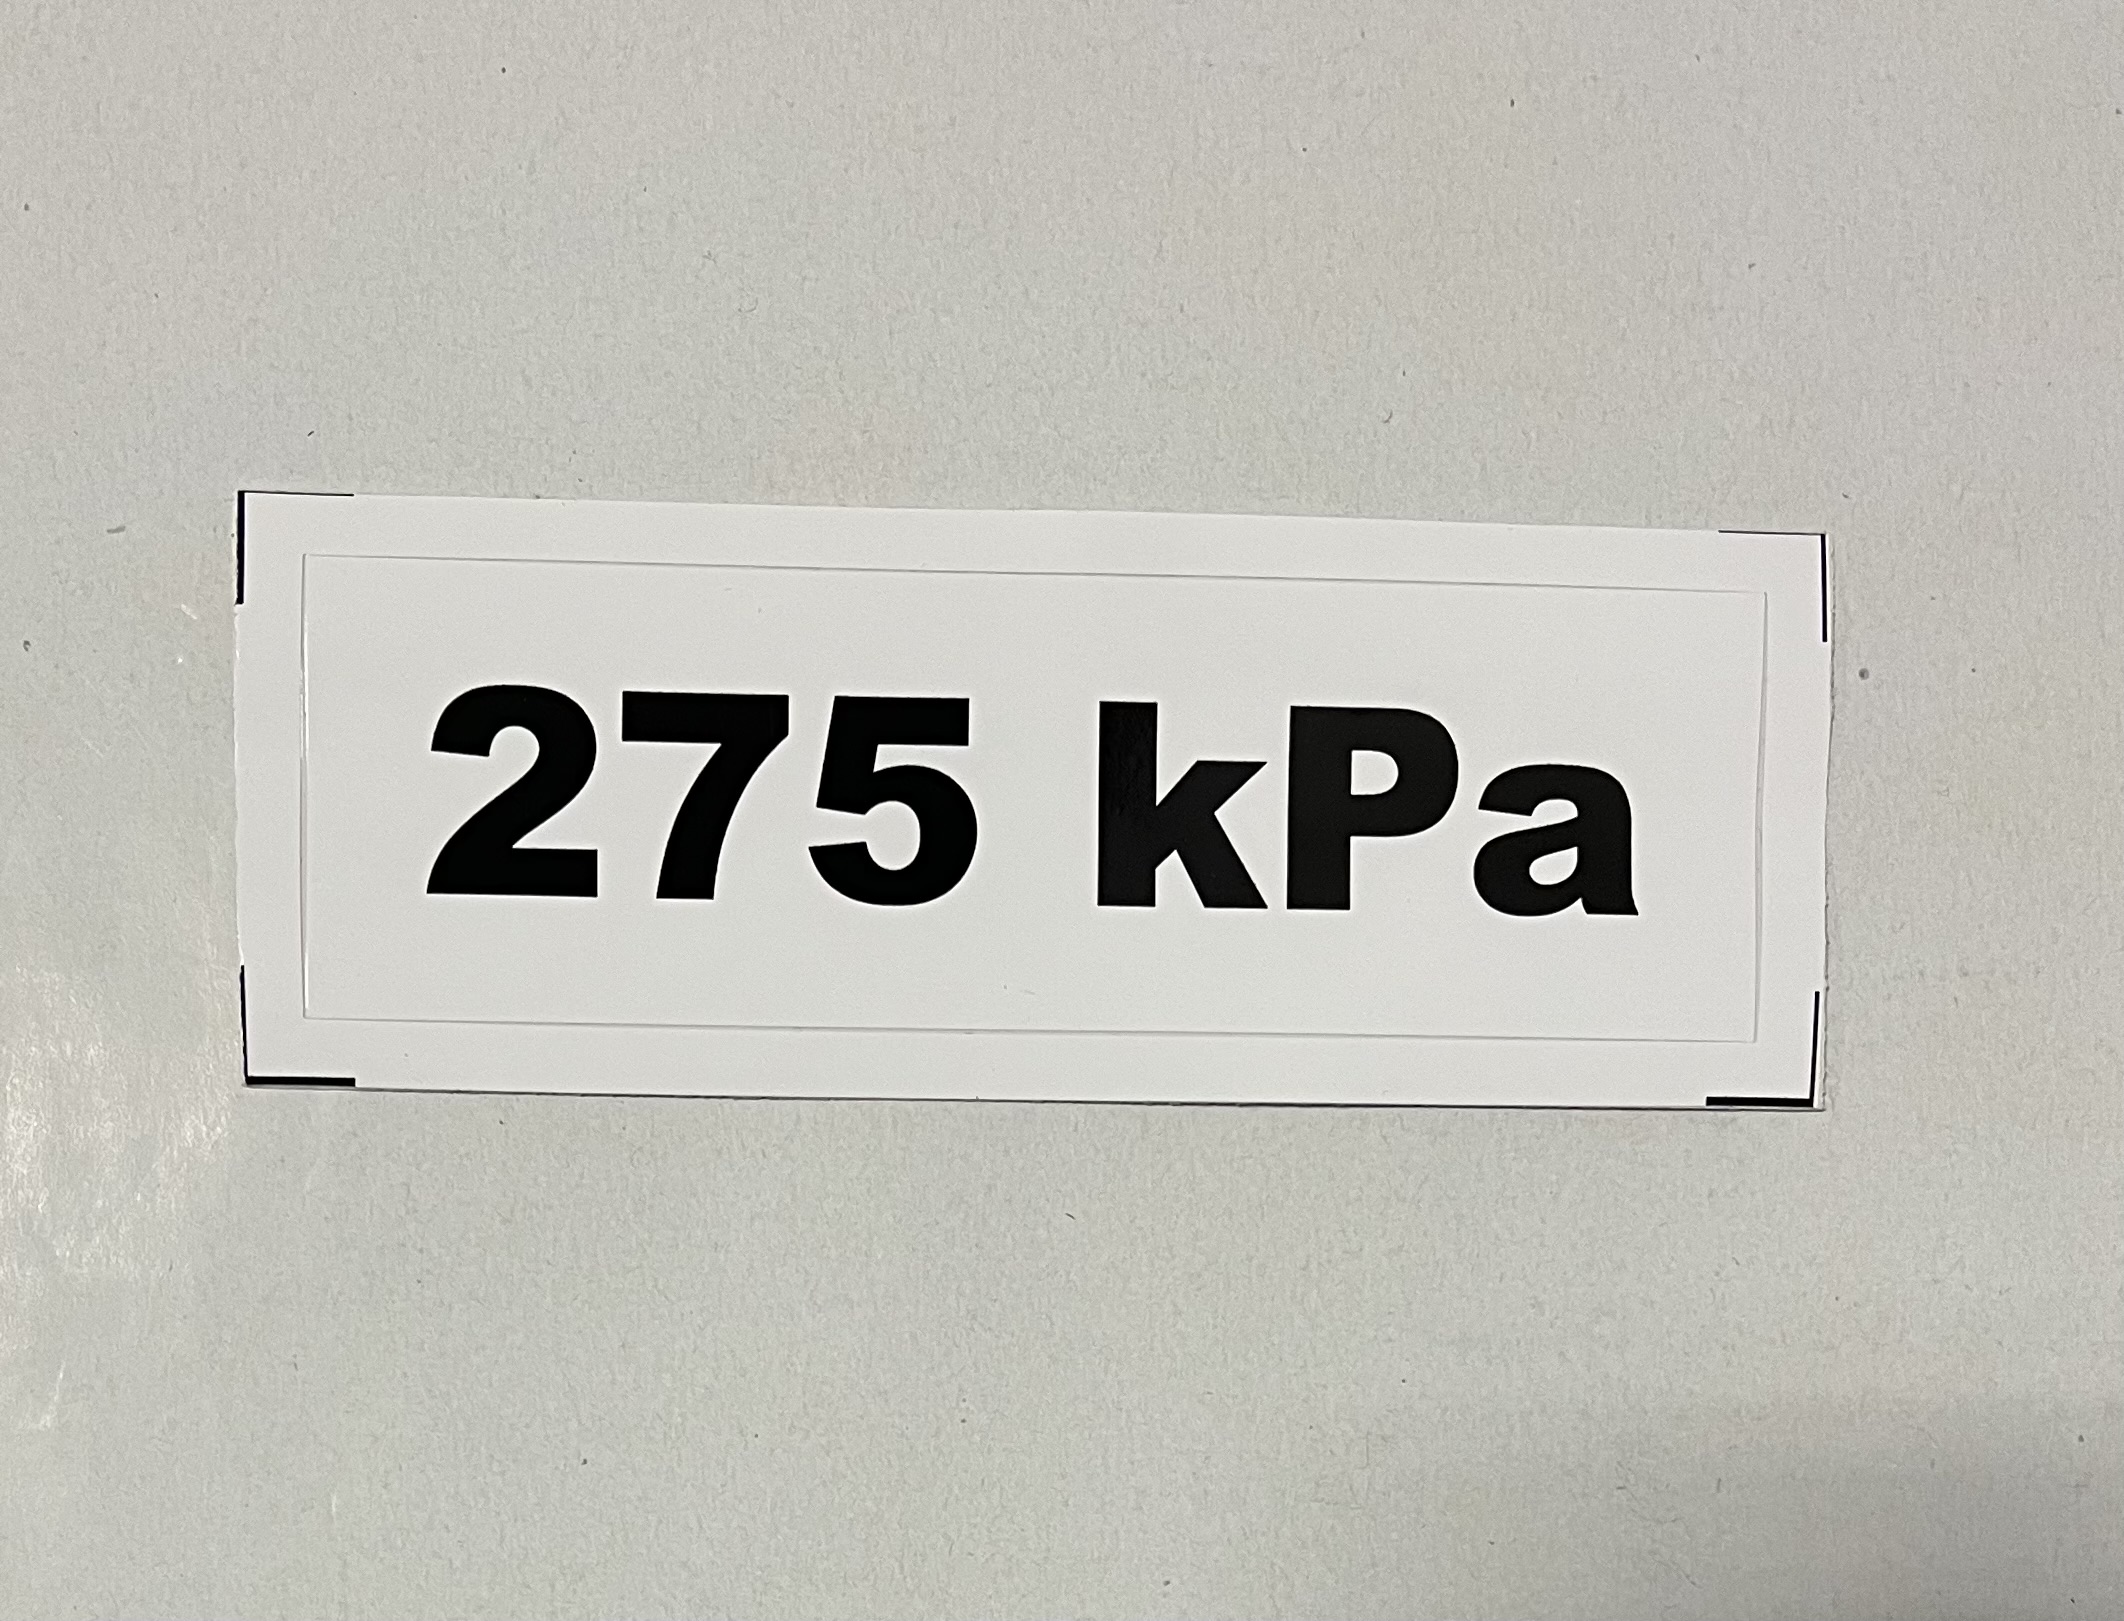 Označenie kPa 275